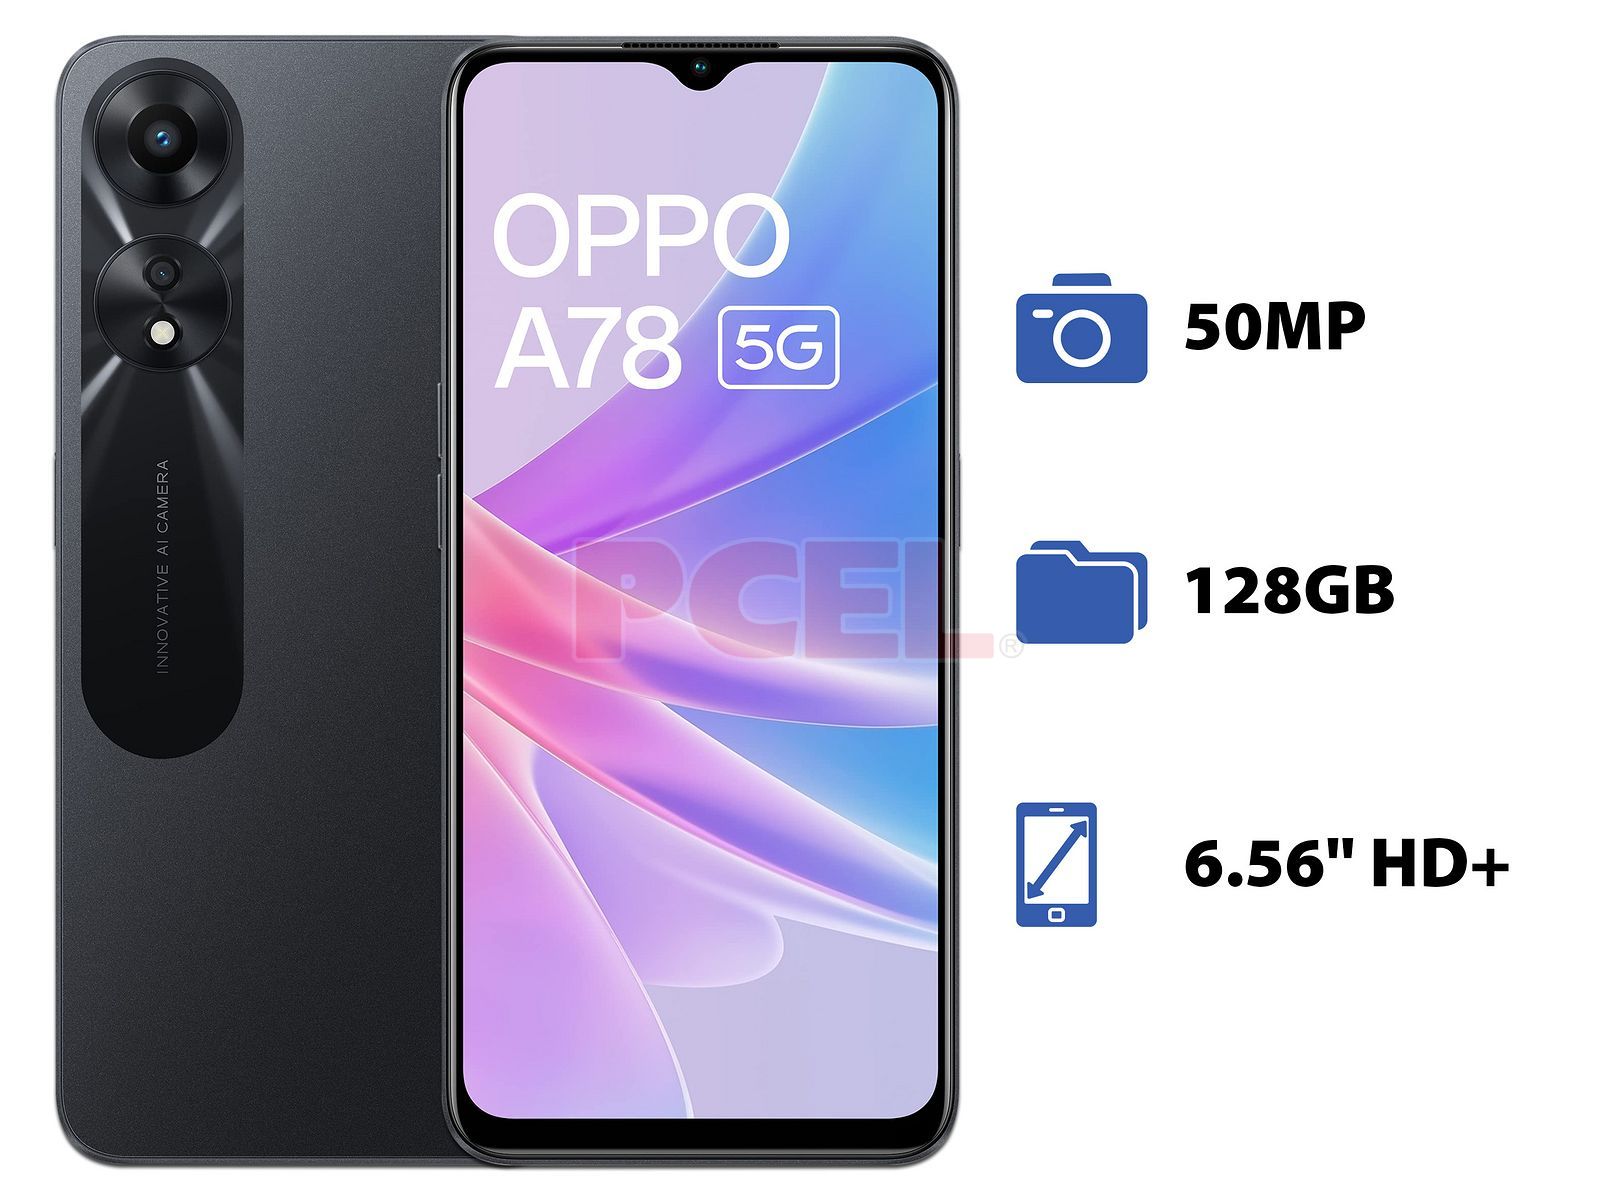 ▷ OPPO A78 4G, un gama media equilibrado con pantalla AMOLED